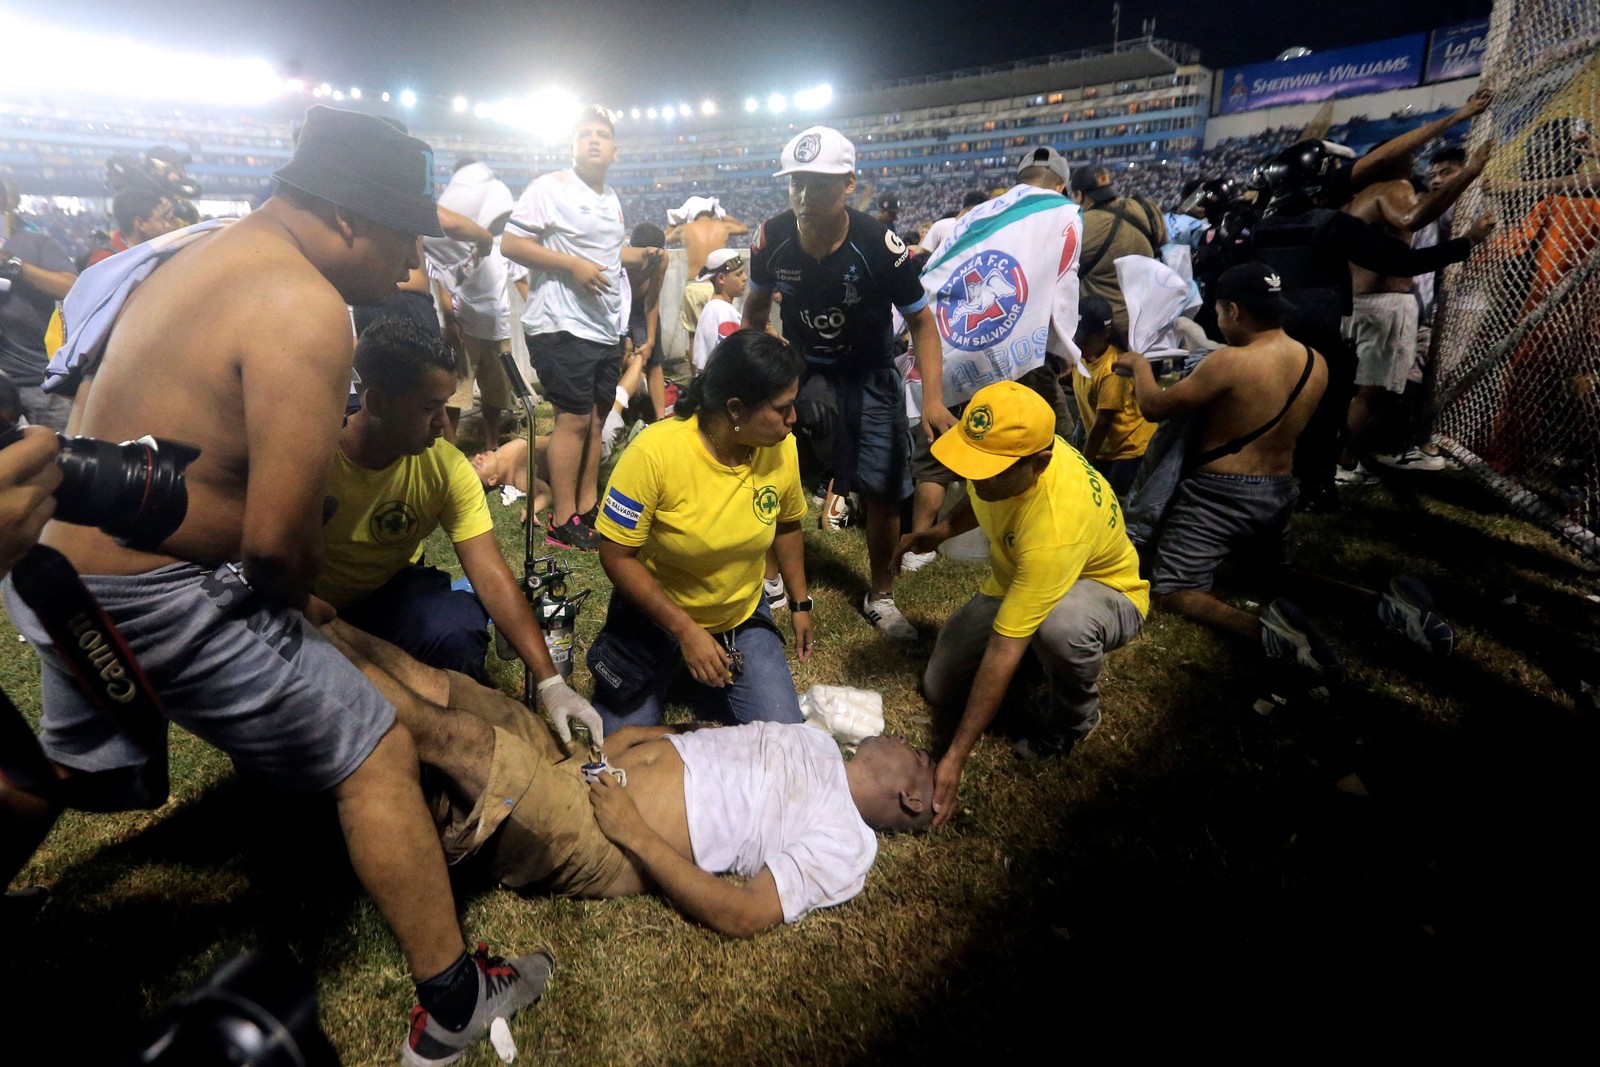 Torcedores de futebol haviam se reunido para assistir a um torneio local, informou a polícia — Foto: Milton Flores / AFP